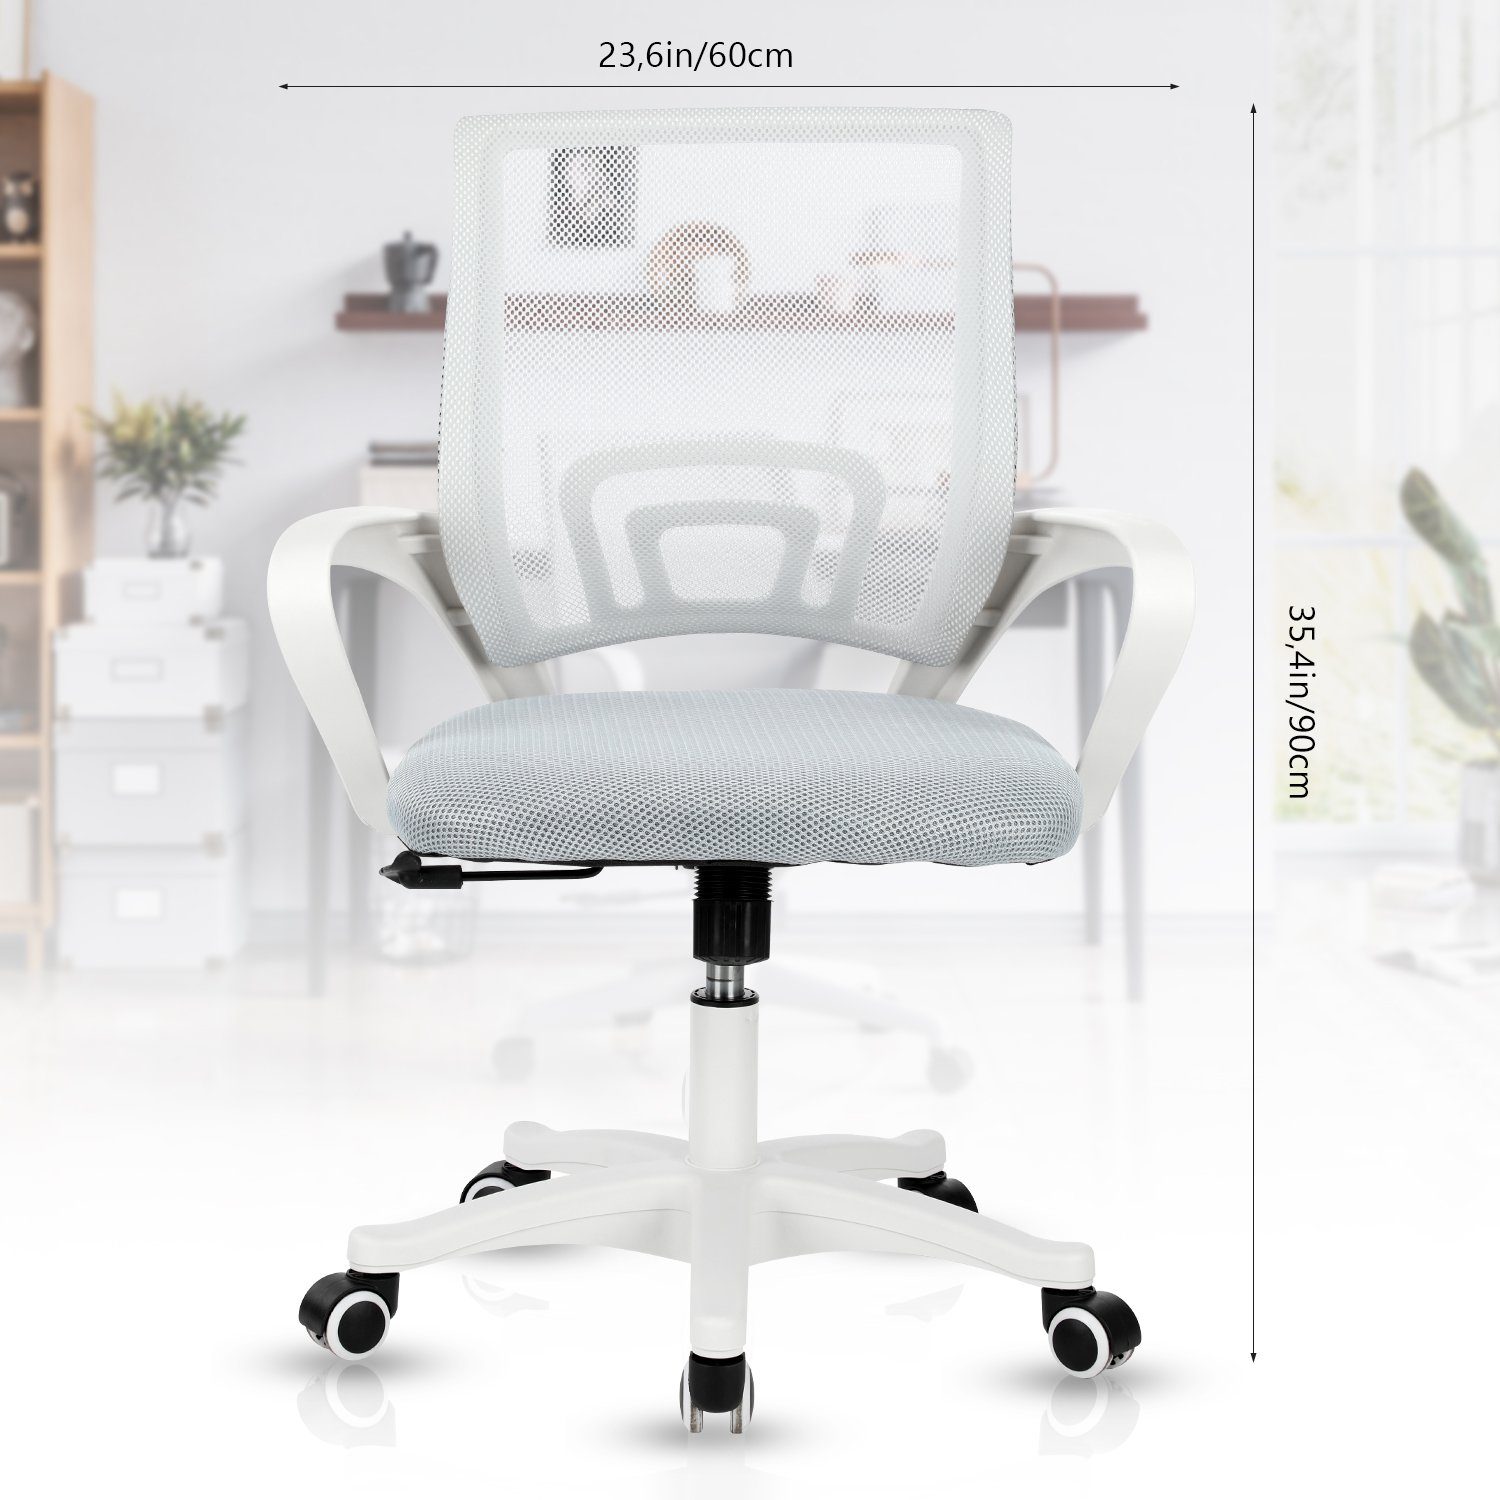 Schreibtischstuhl Wippfunktion, höhenverstellbarer, Drehstuhl, atmungsaktiv, Bürostuhl, iscooter 360° Wippfunktion, Schreibtischstuhl Büro, Arbeitszimmer mit